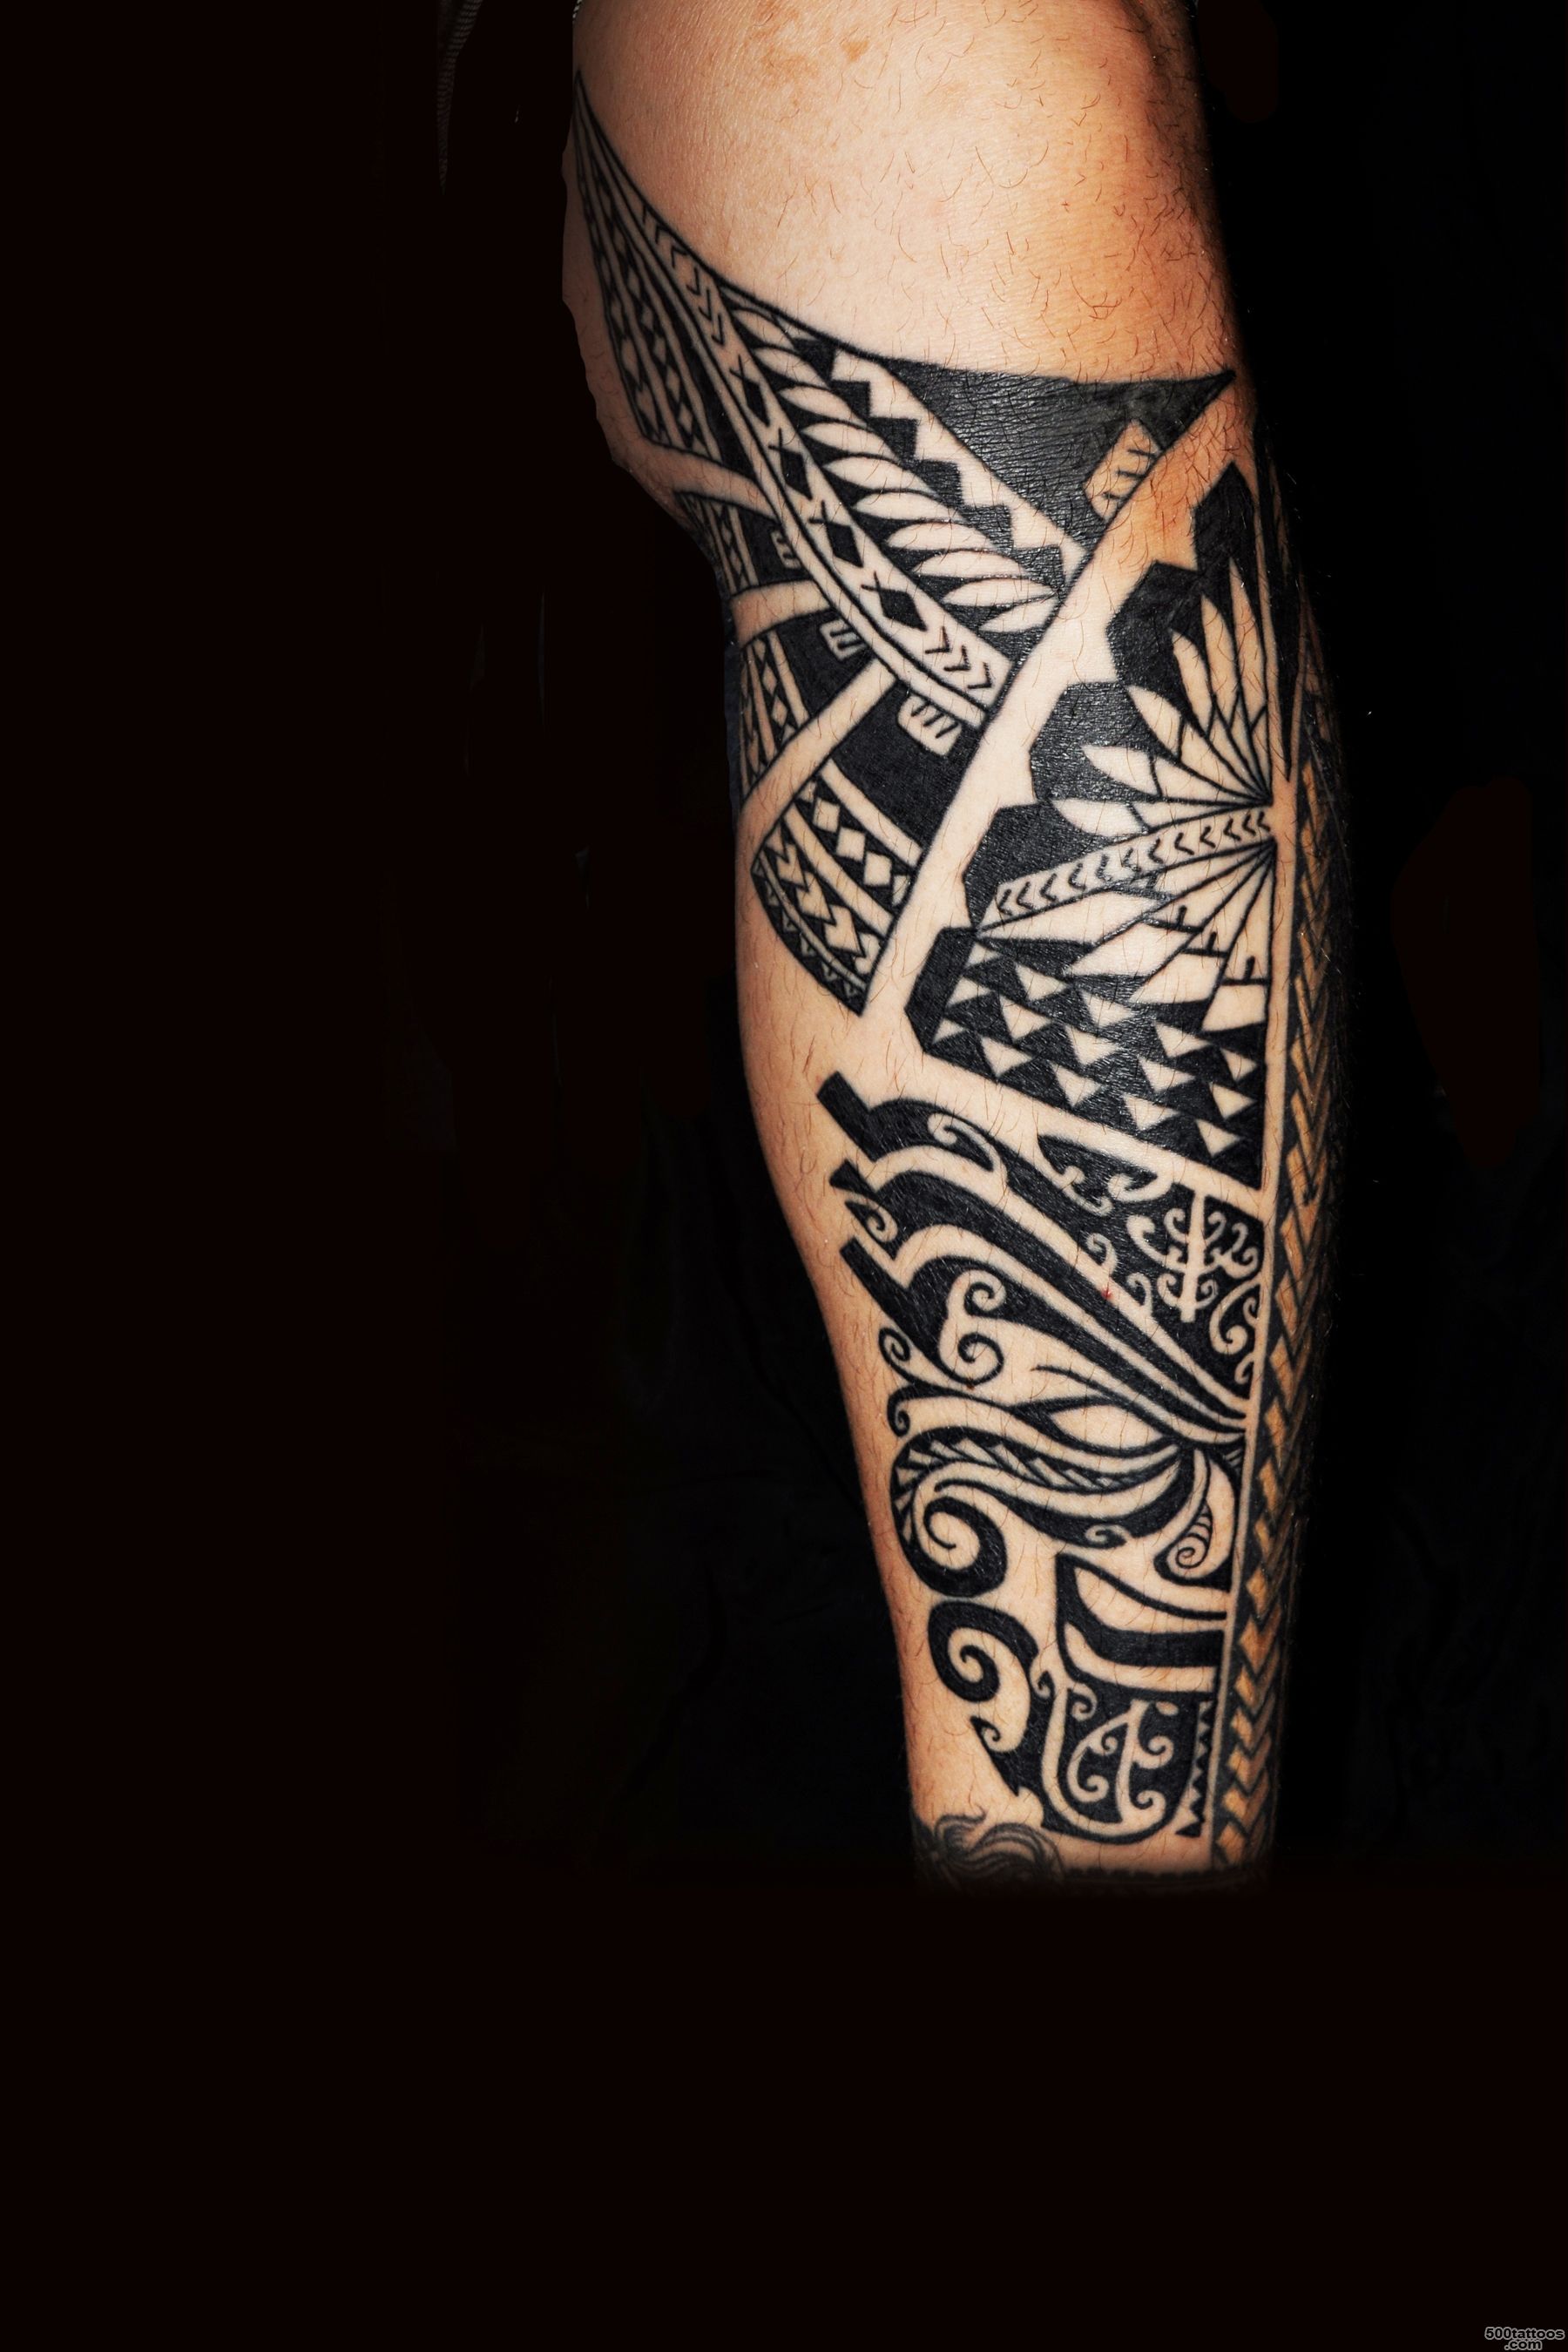 Maori tattoo calf  Tattoo ideas!  Pinterest  Maori Tattoos, Leg ..._48